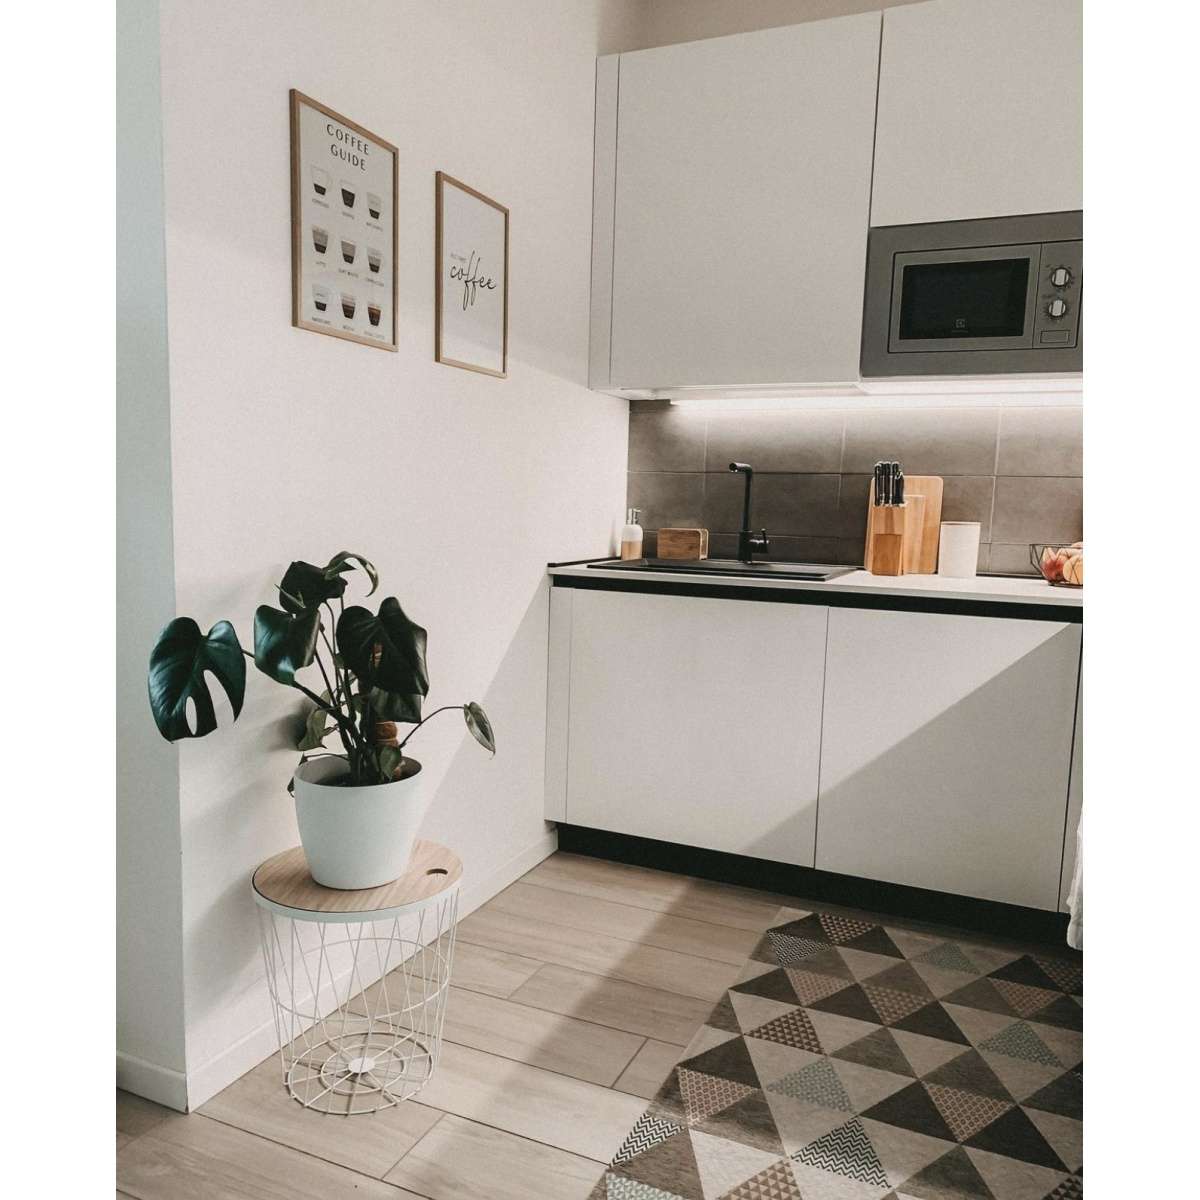 Immagine del prodotto Tappeto Triangoli Grigio Caldo Antiscivolo e Lavabile in Lavatrice | Pietro Zanetti Home